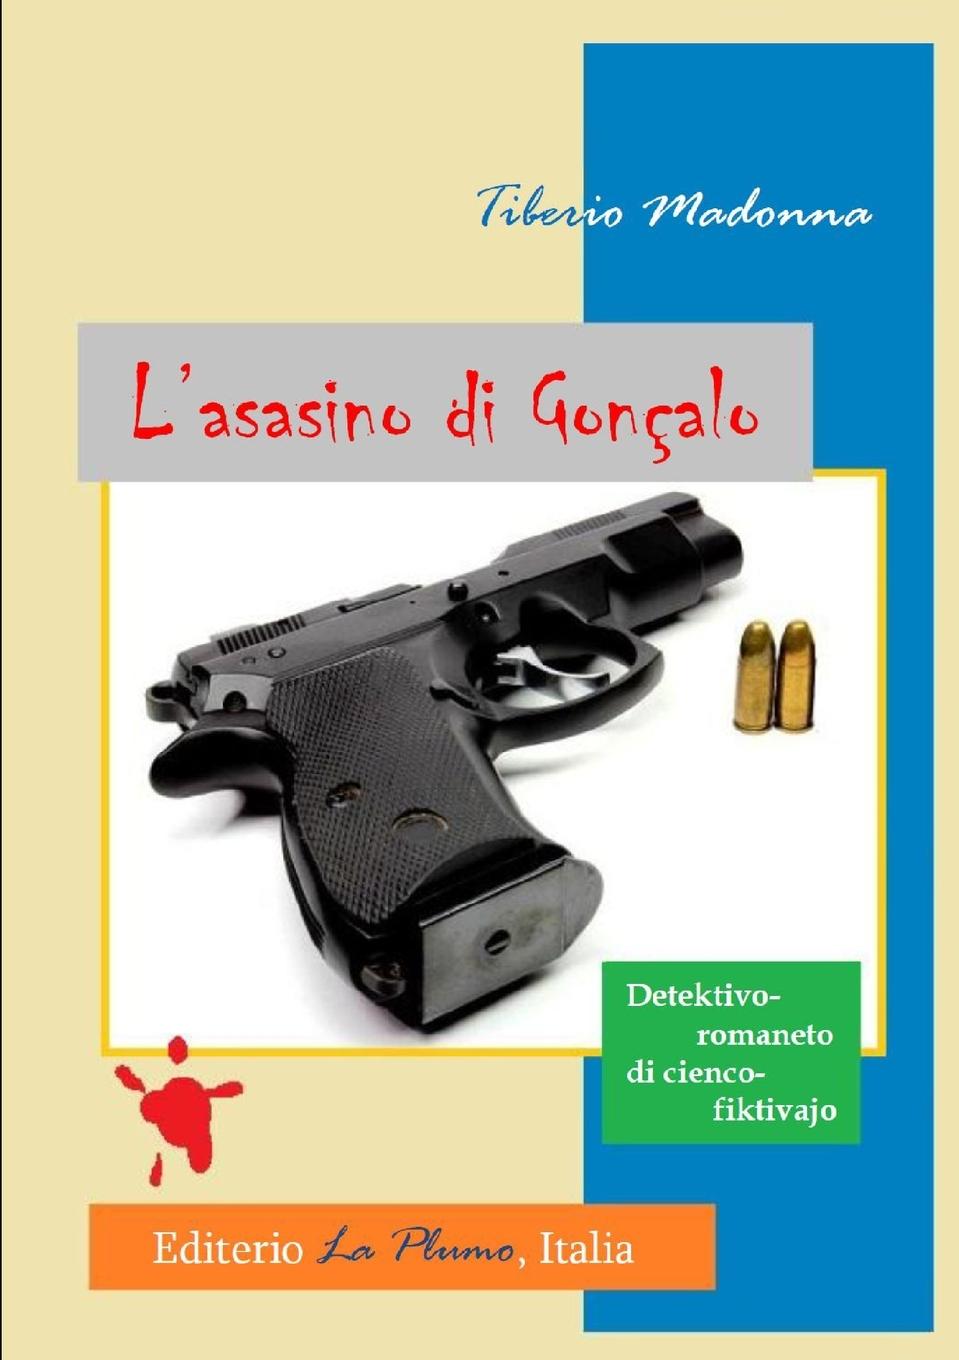 Kniha L'asasino di Goncalo Tiberio Madonna